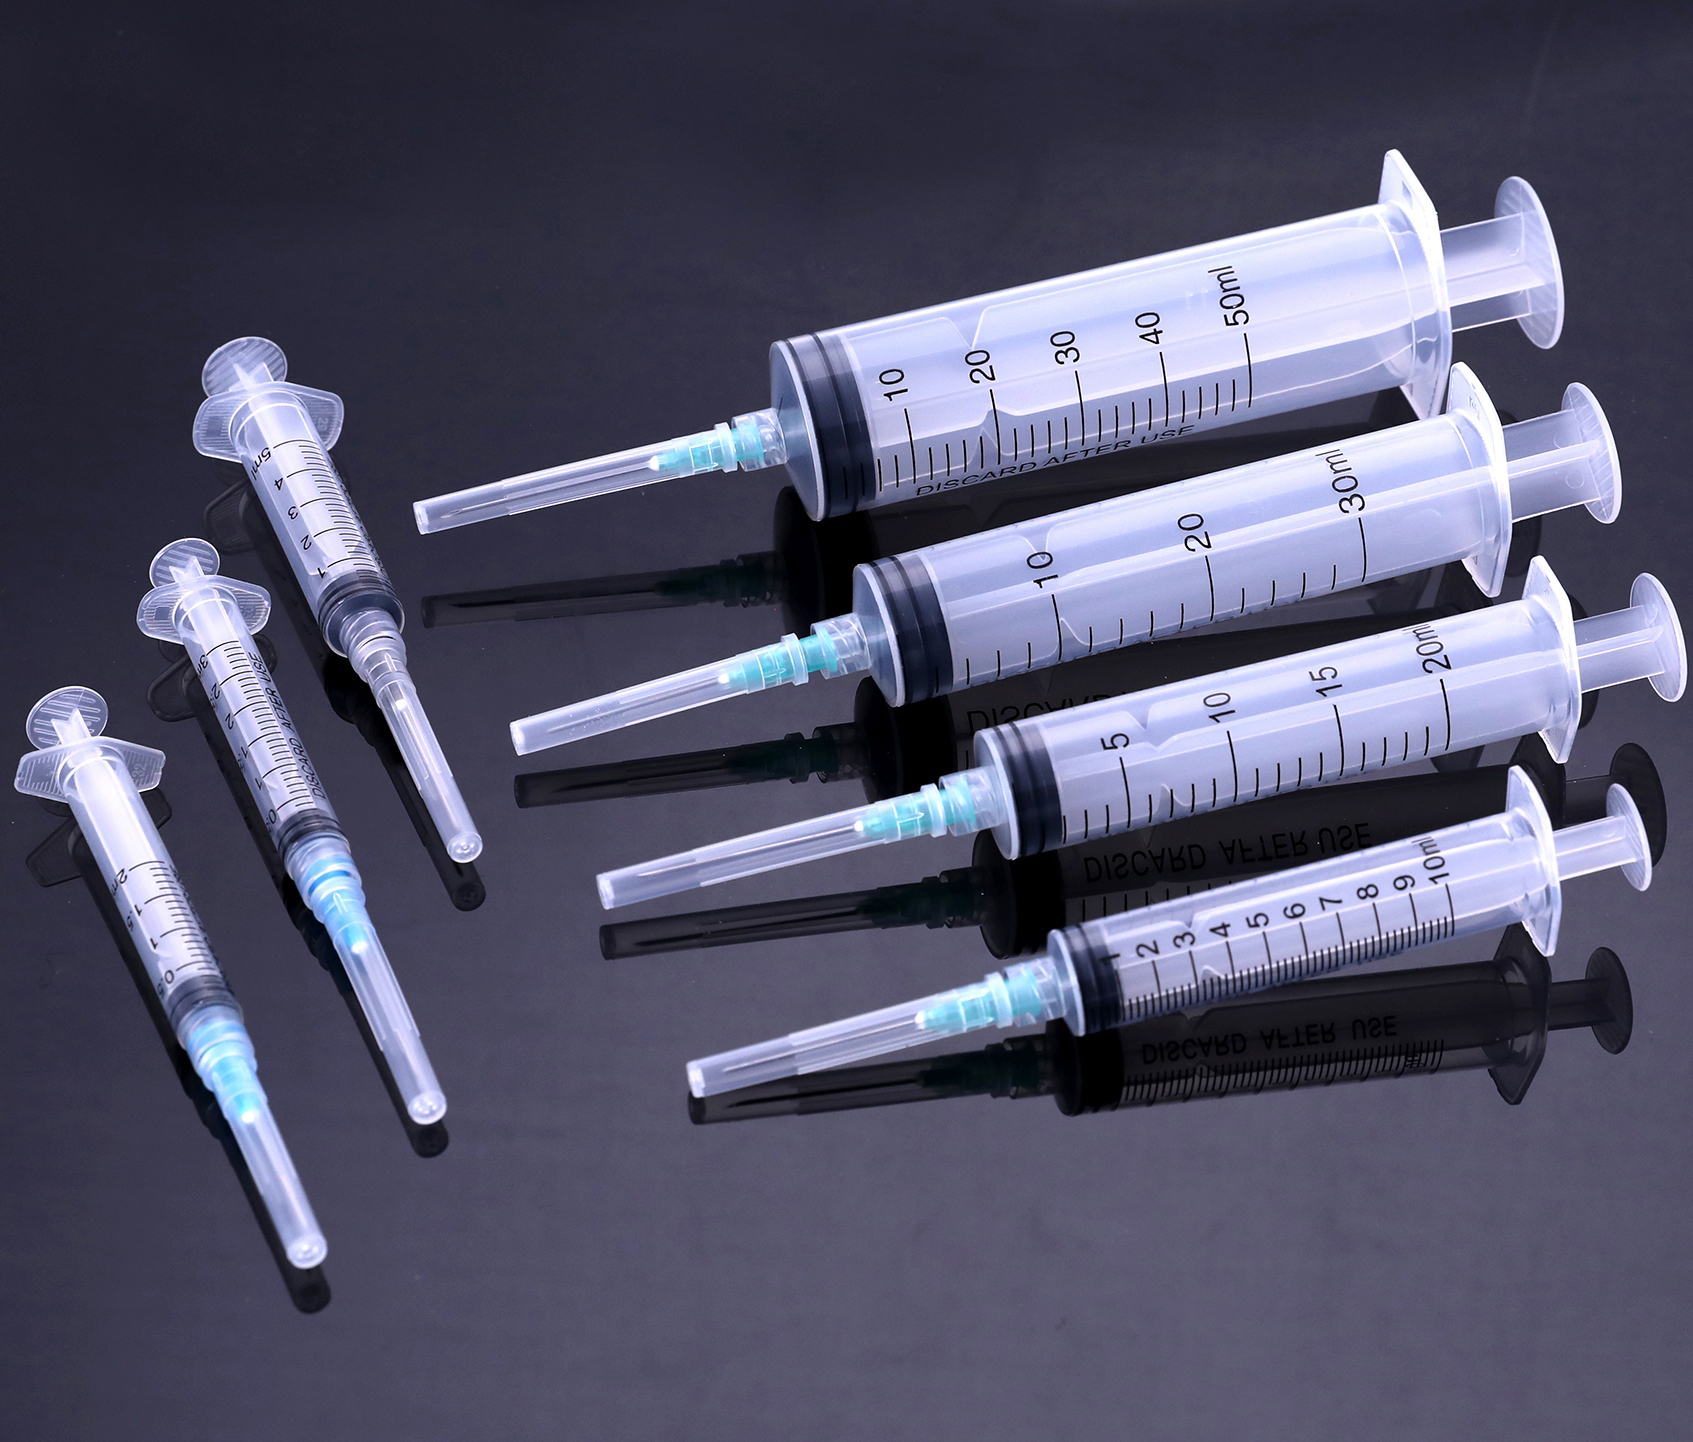 Syringes and Needles Market